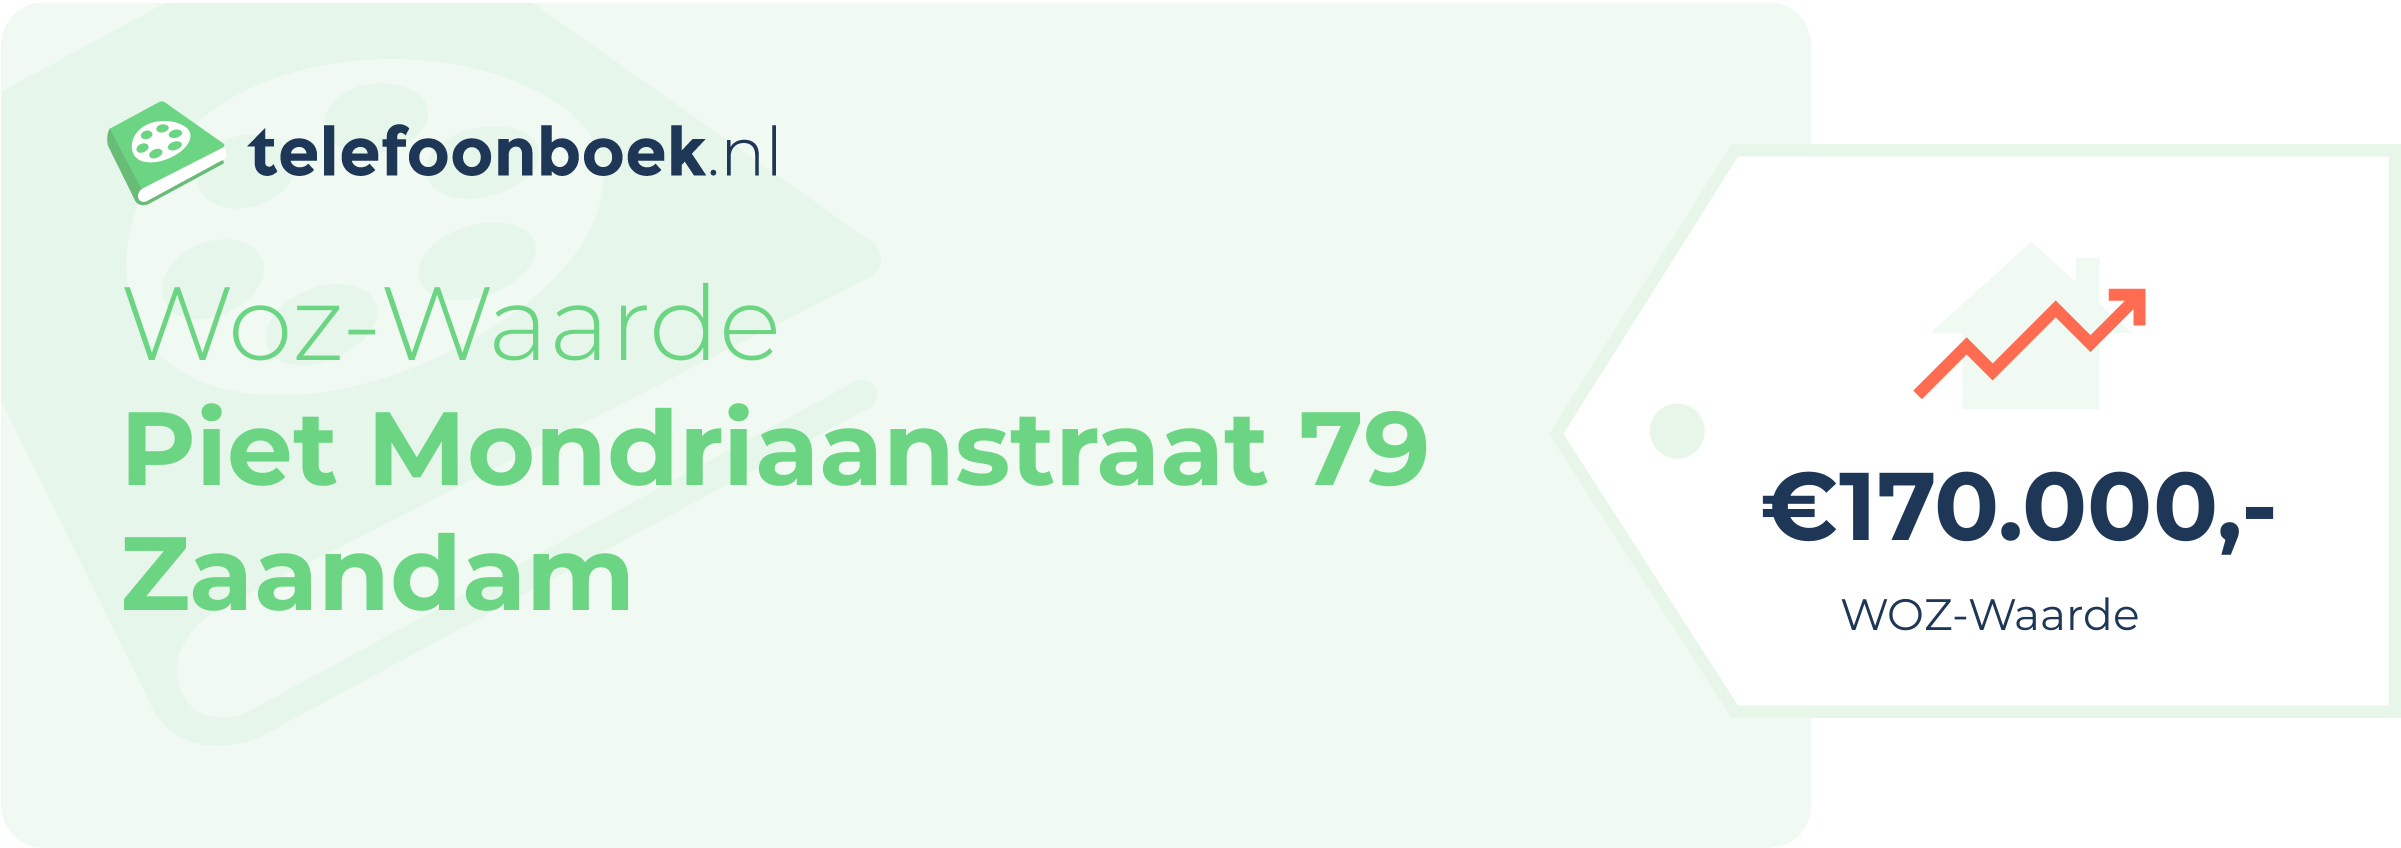 WOZ-waarde Piet Mondriaanstraat 79 Zaandam